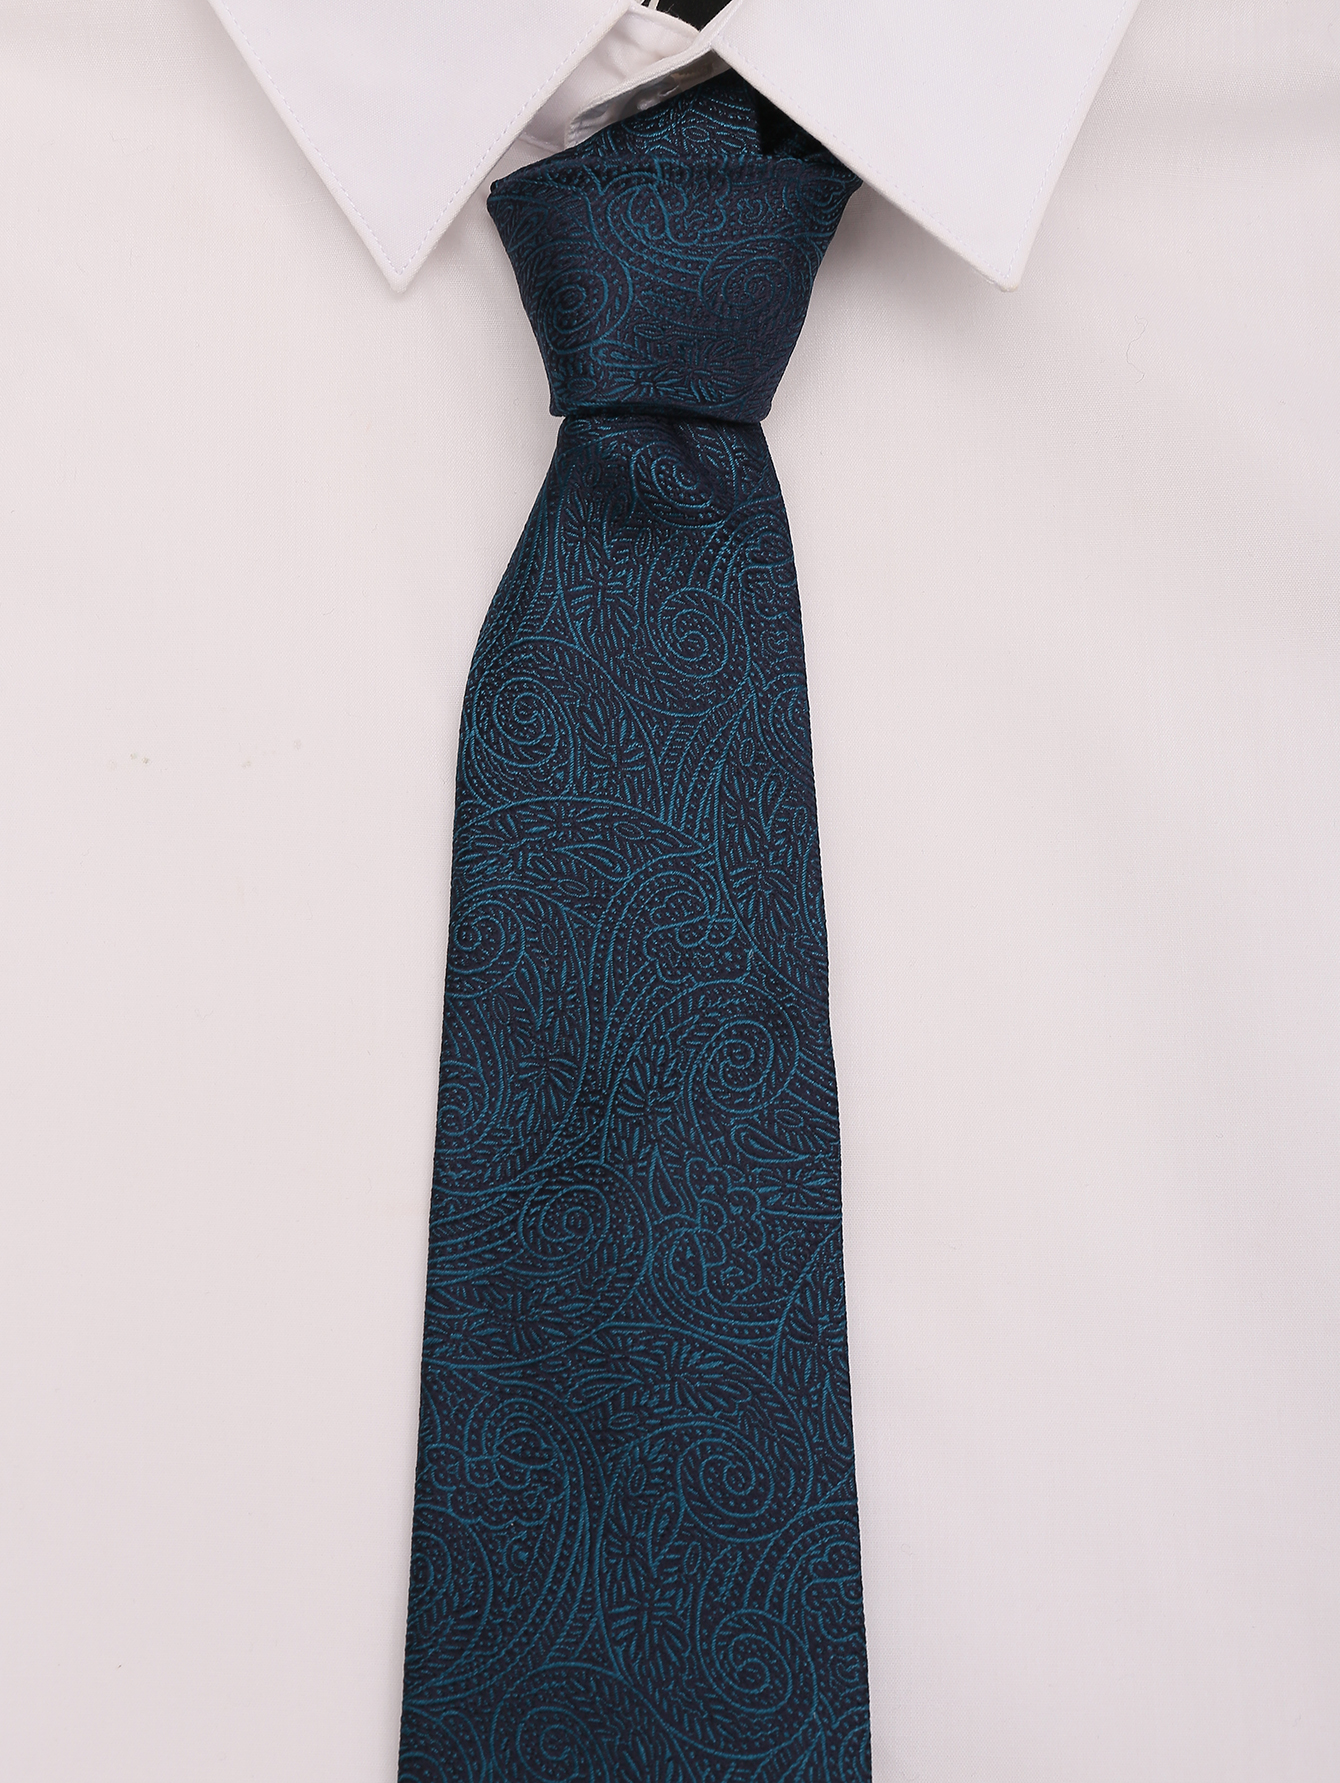 Купить галстук мужской классический.